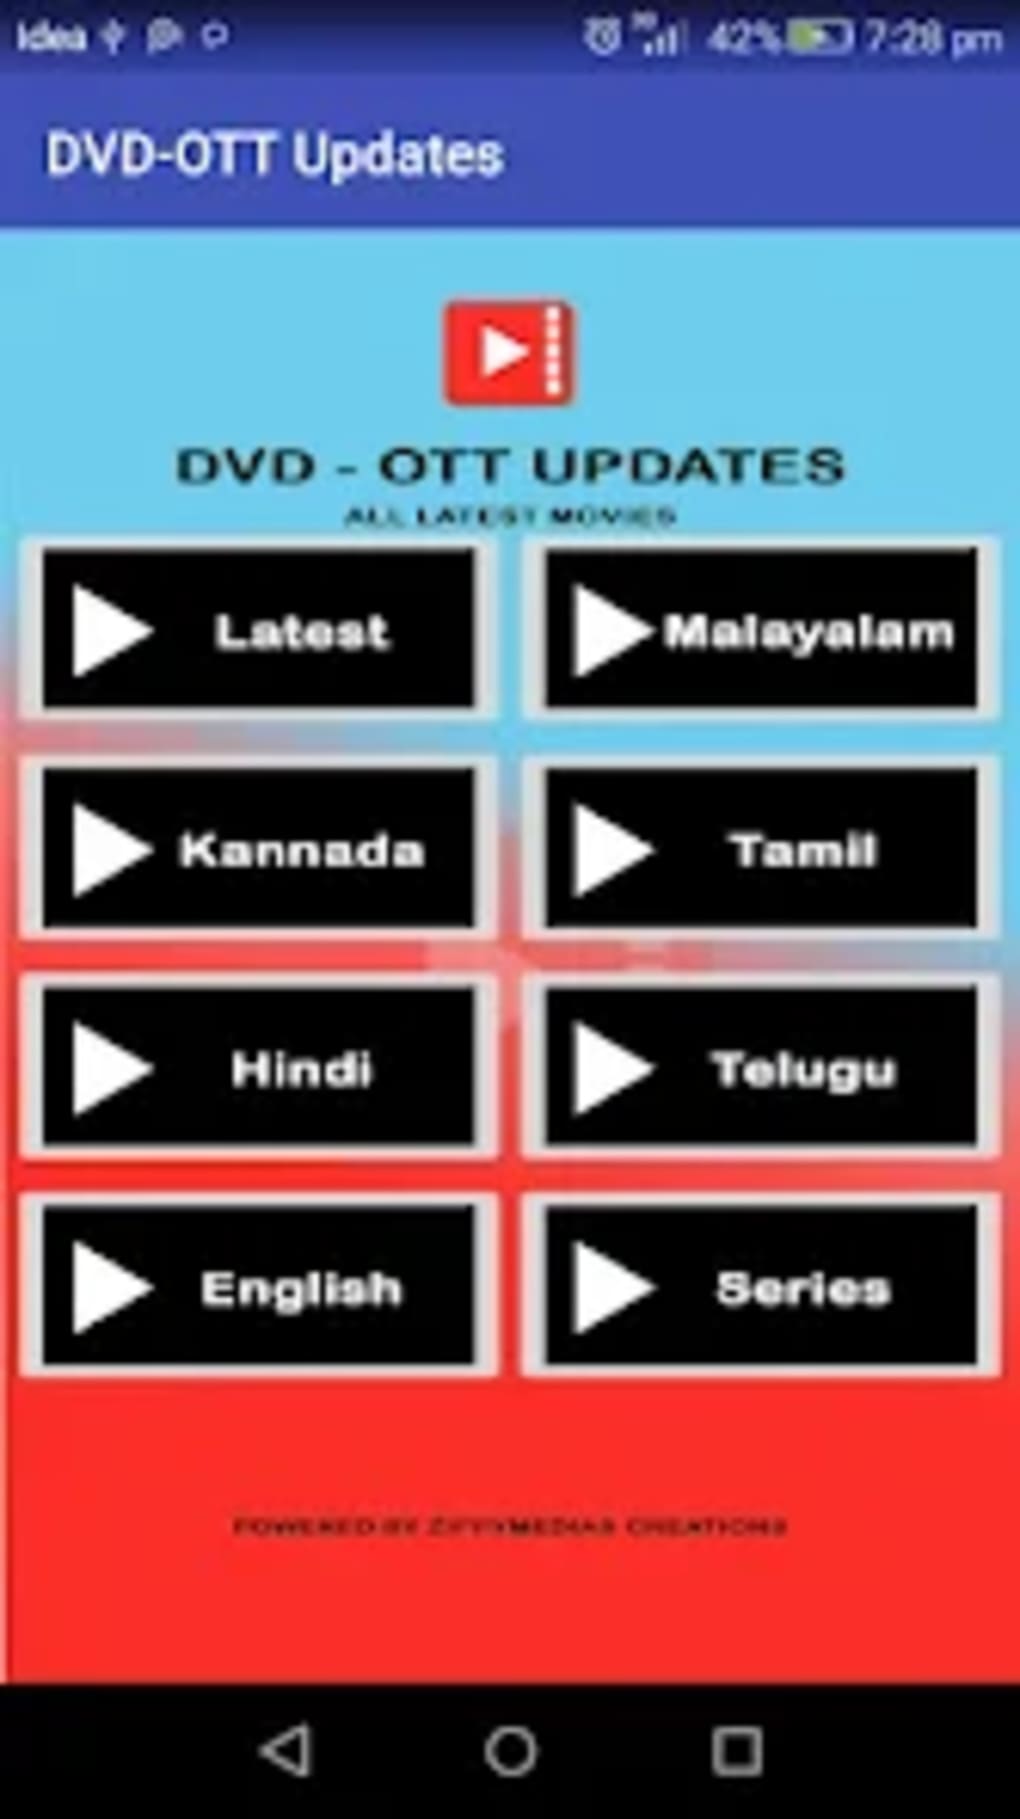 Tamilmv MOD APK Download v1.0 For Android – (Latest Version) 2